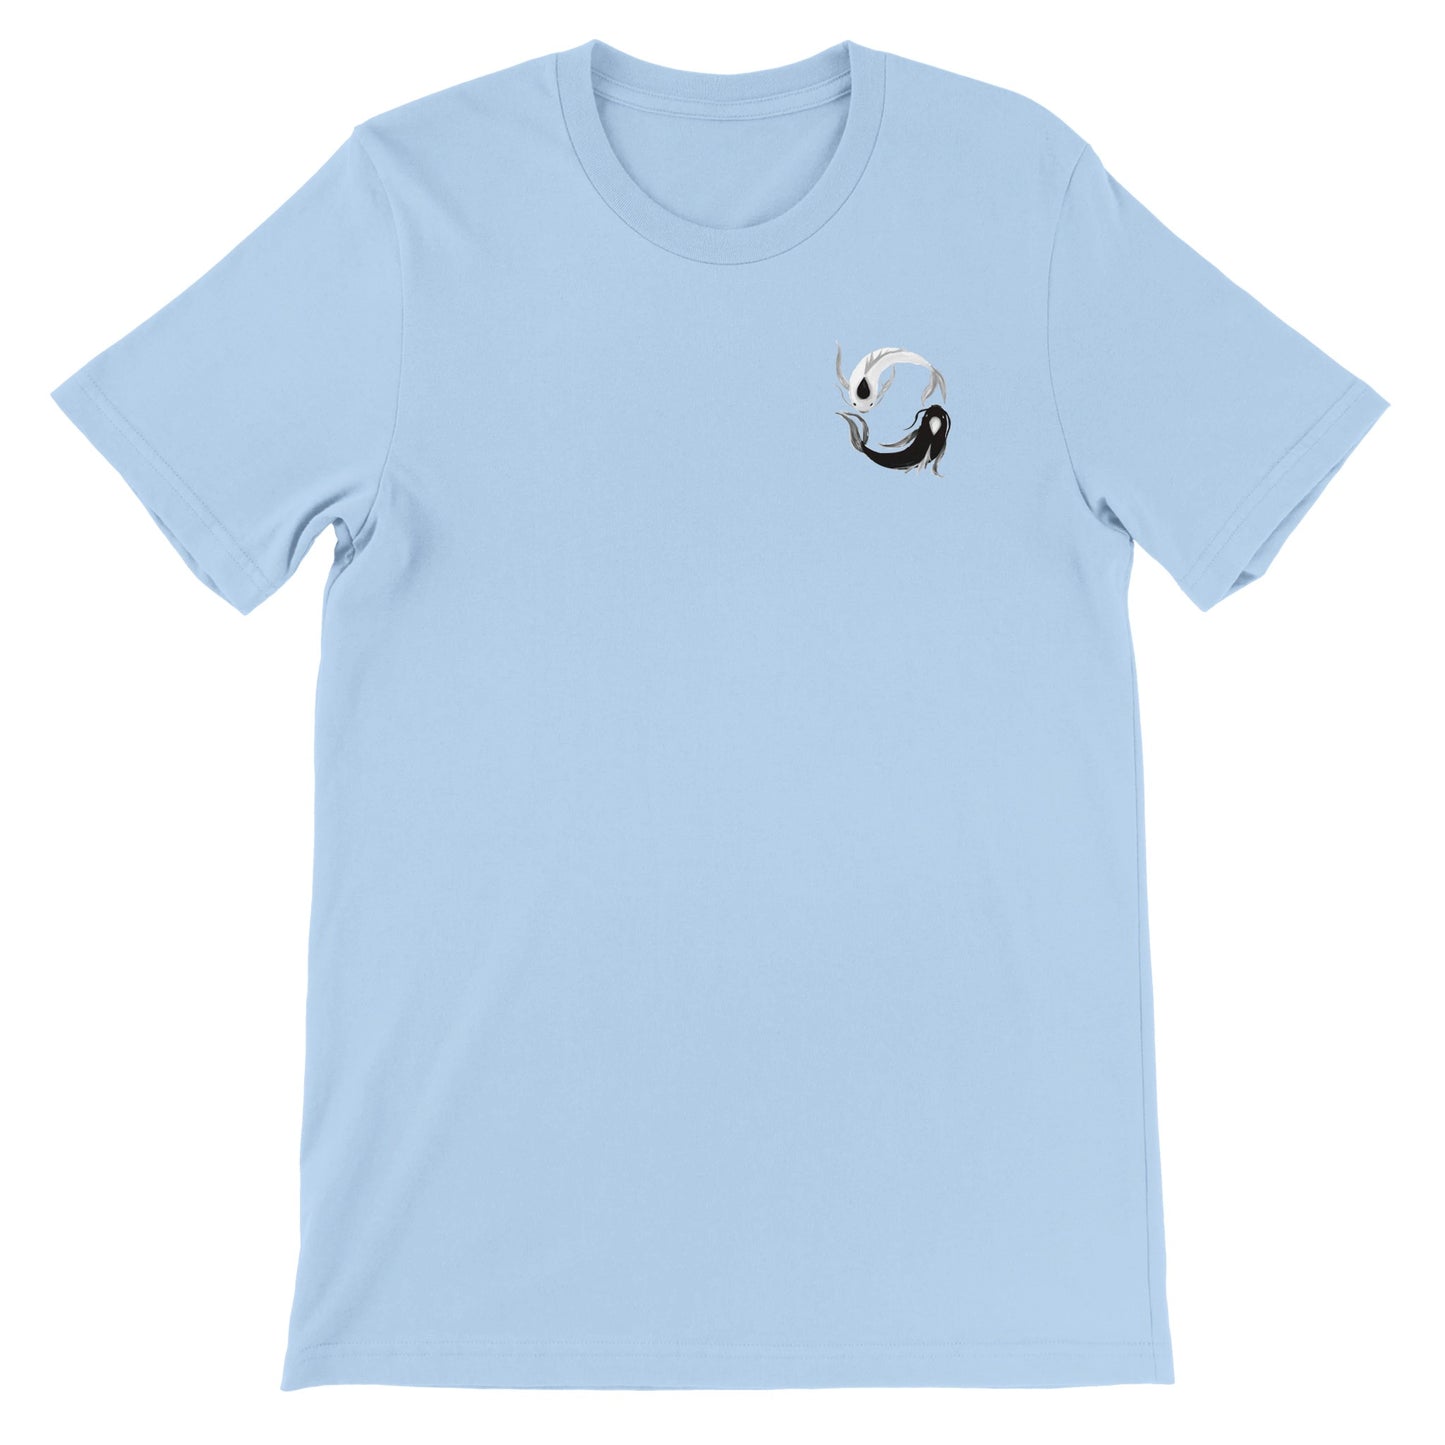 Jujutsu Kaisen - Gojo & Geto Crewneck T-shirt